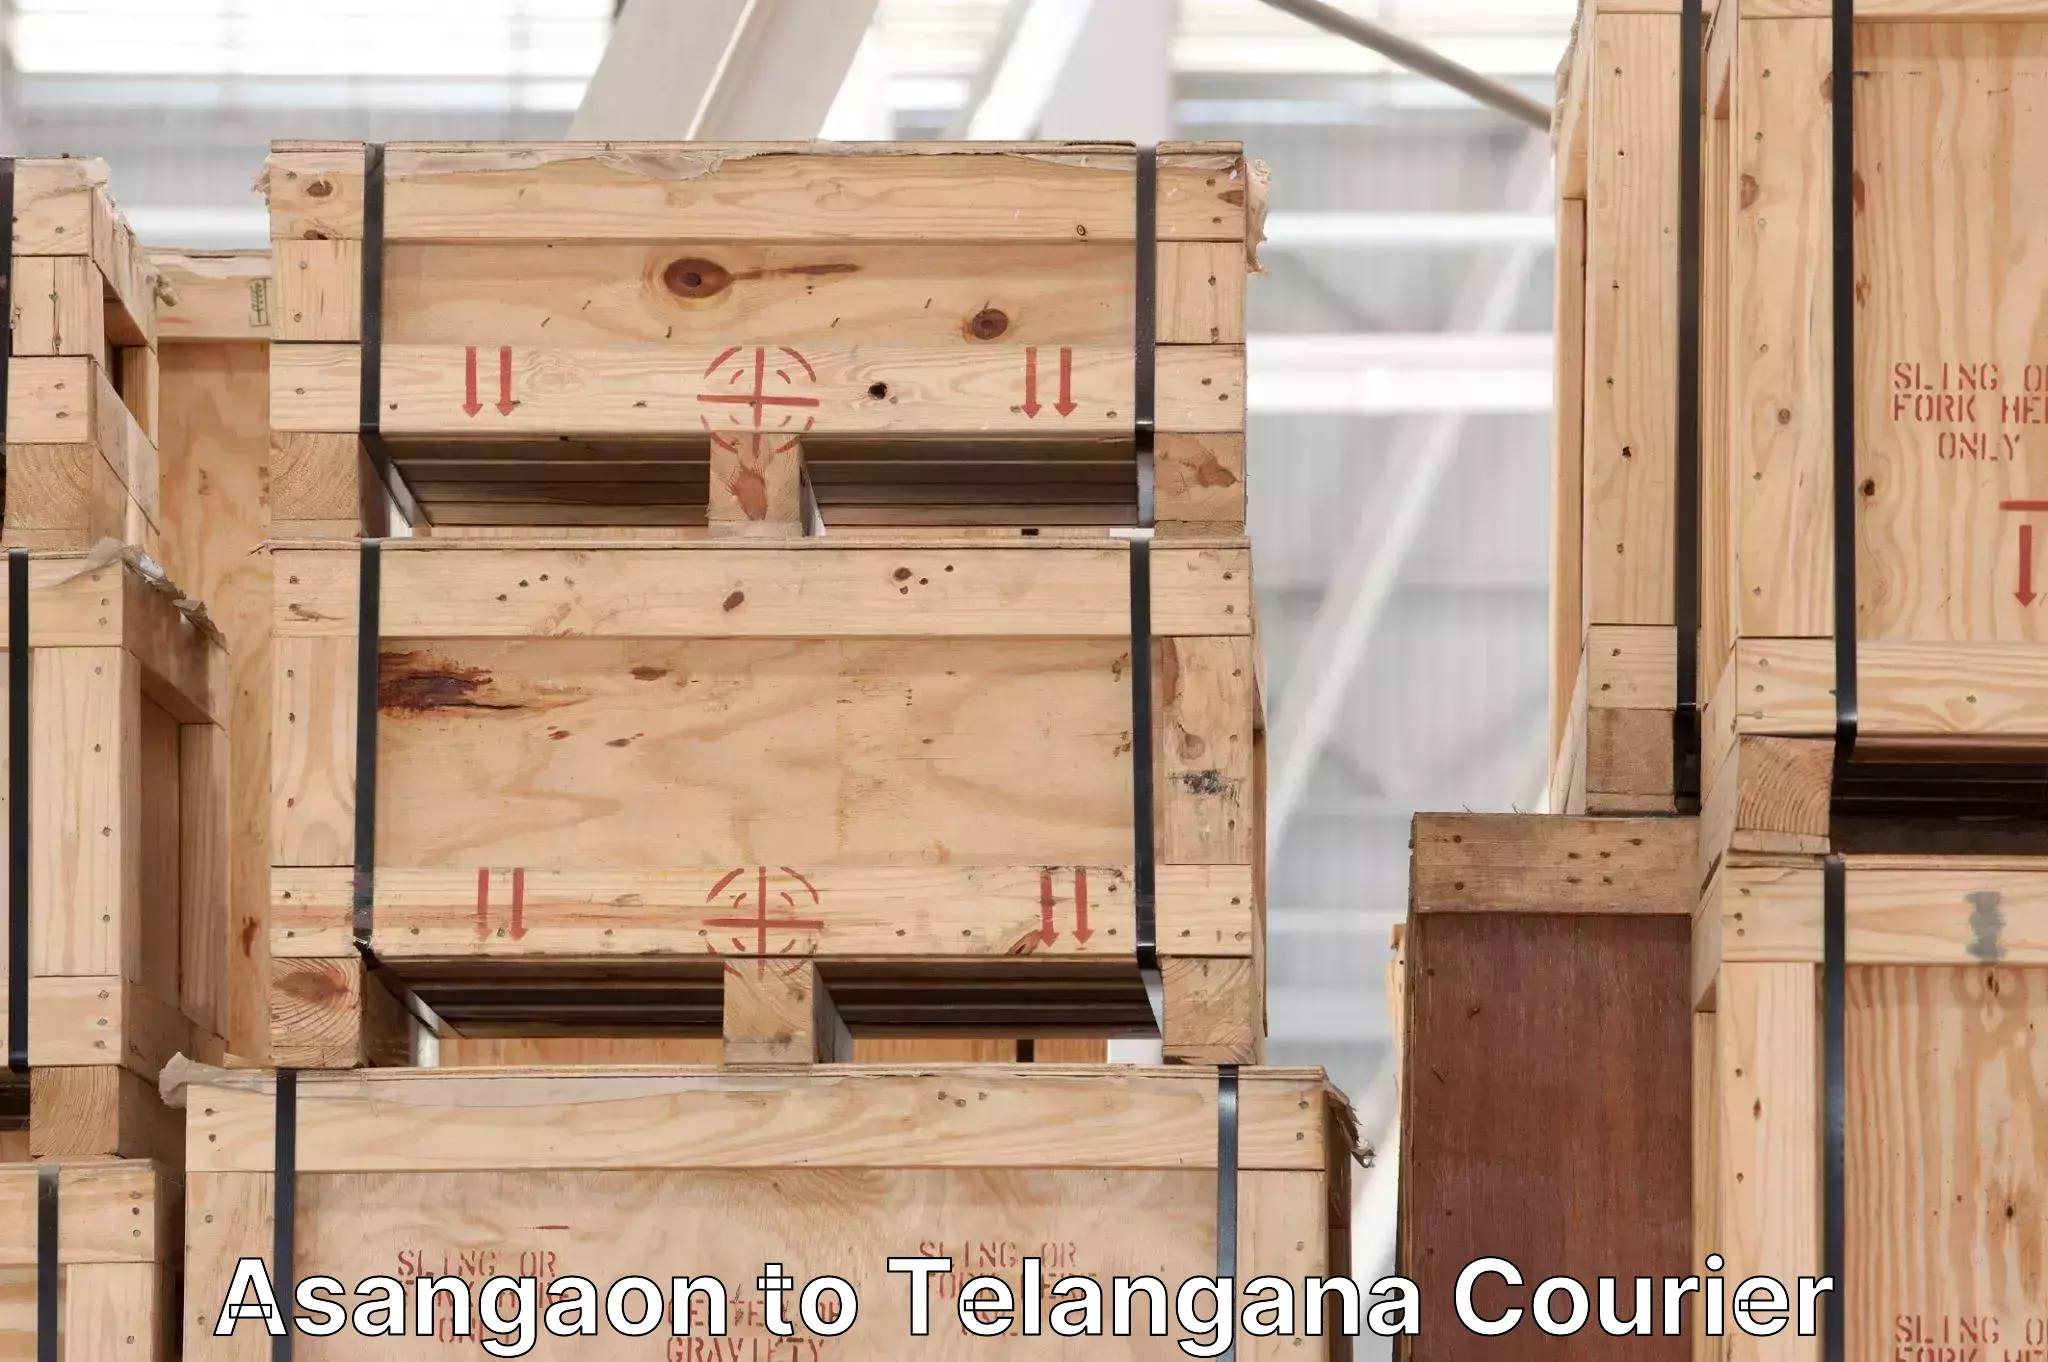 Baggage transport network Asangaon to Telangana